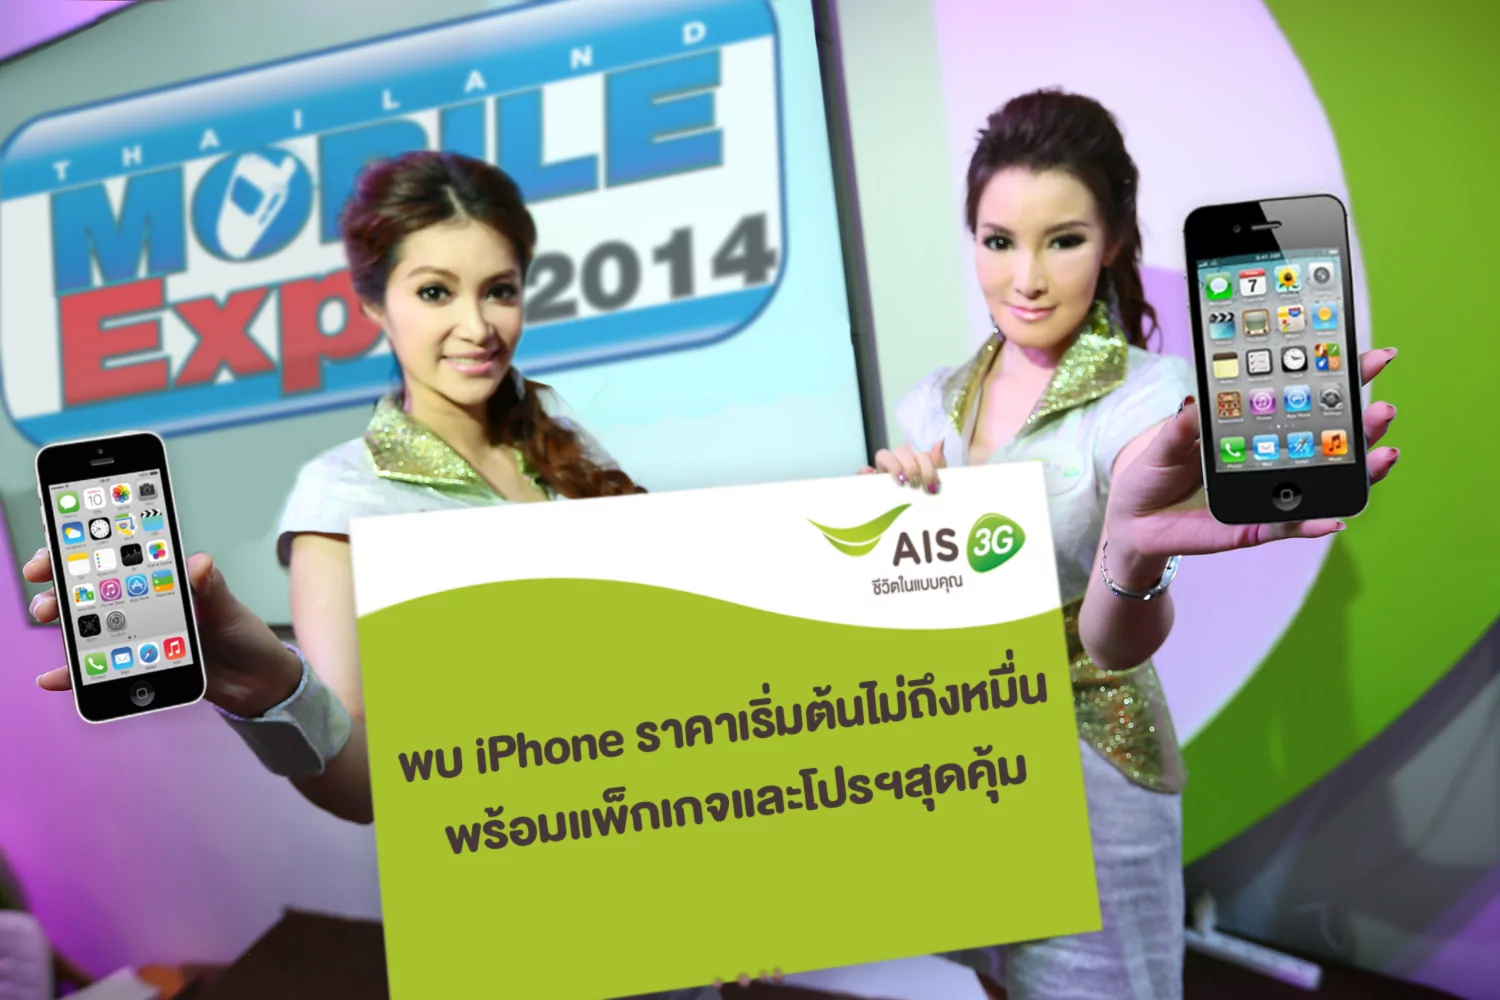 Thailand Mobile Expo 20141 | iPhone 4S | เอไอเอส 3G 2100 เตรียมขนไอโฟน 4S ไปขายในราคาไม่ถึงหมื่น พร้อมแพ็กเกจและของแถมสุดว๊าว ให้ลูกค้าในงาน “Thailand Mobile Expo 2014”